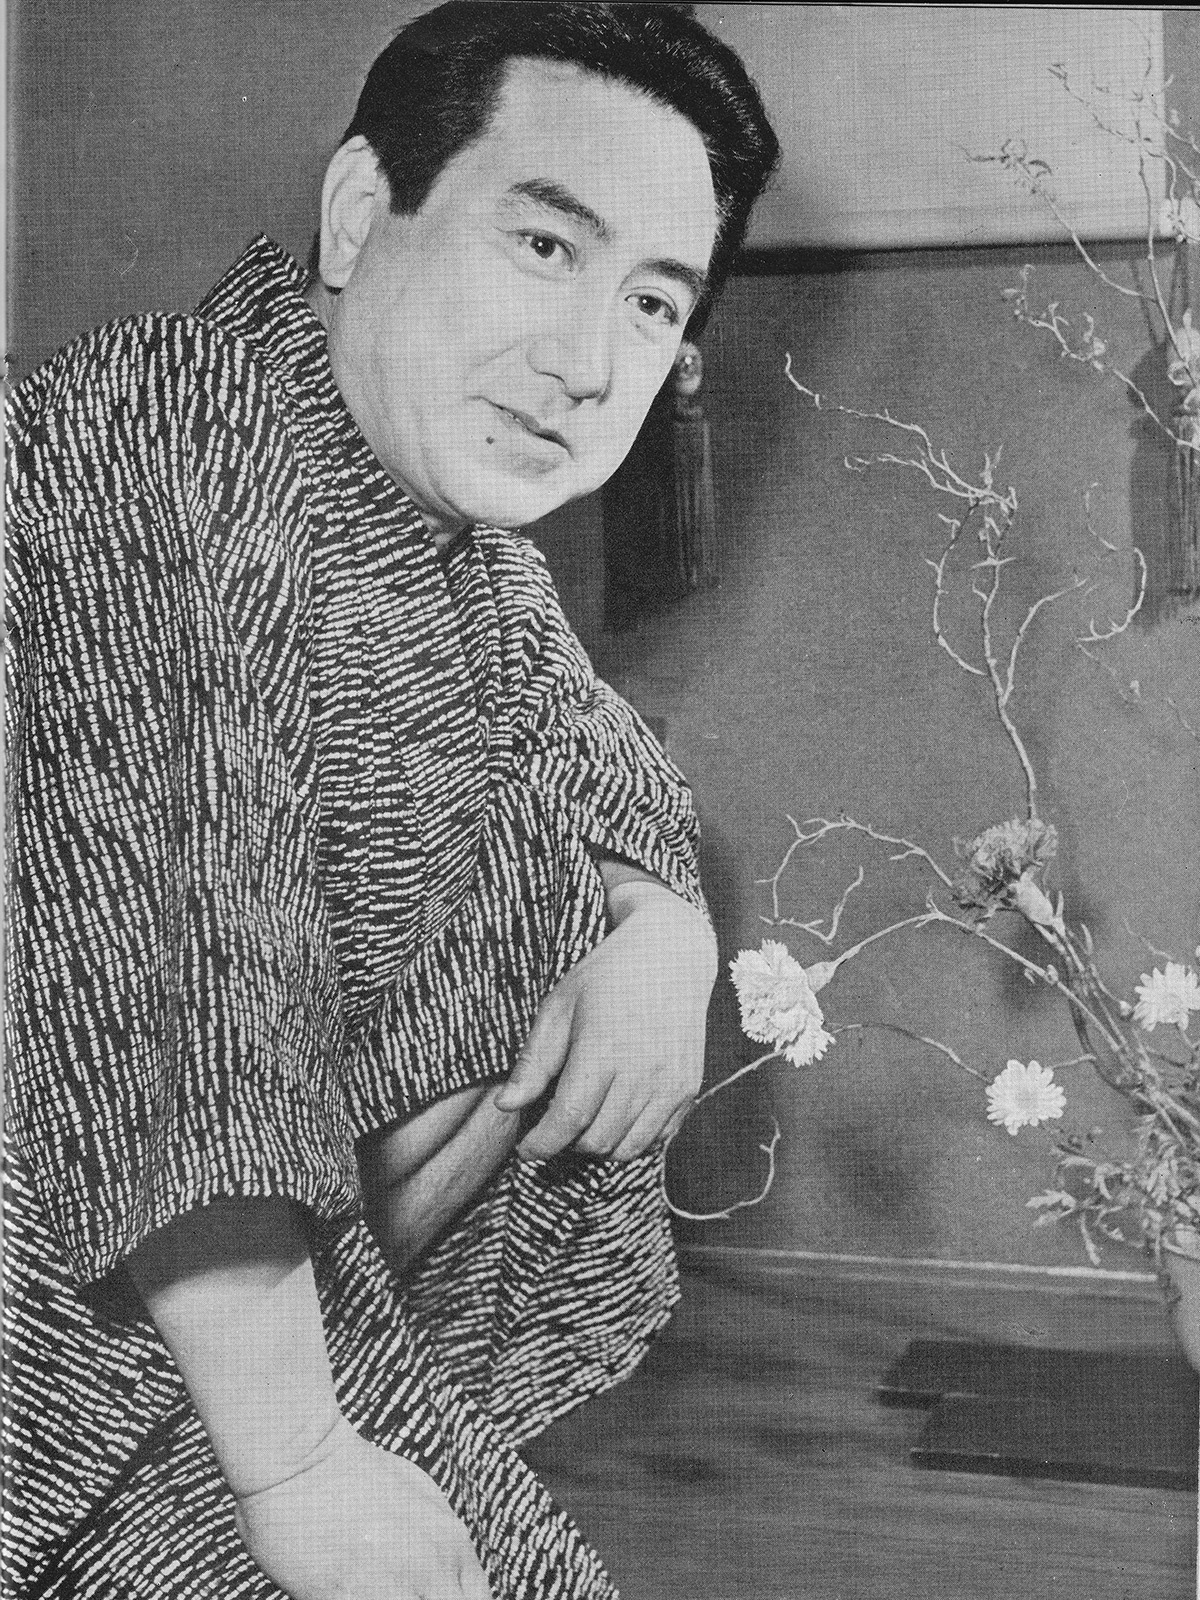 片岡千恵蔵 - Wikipedia